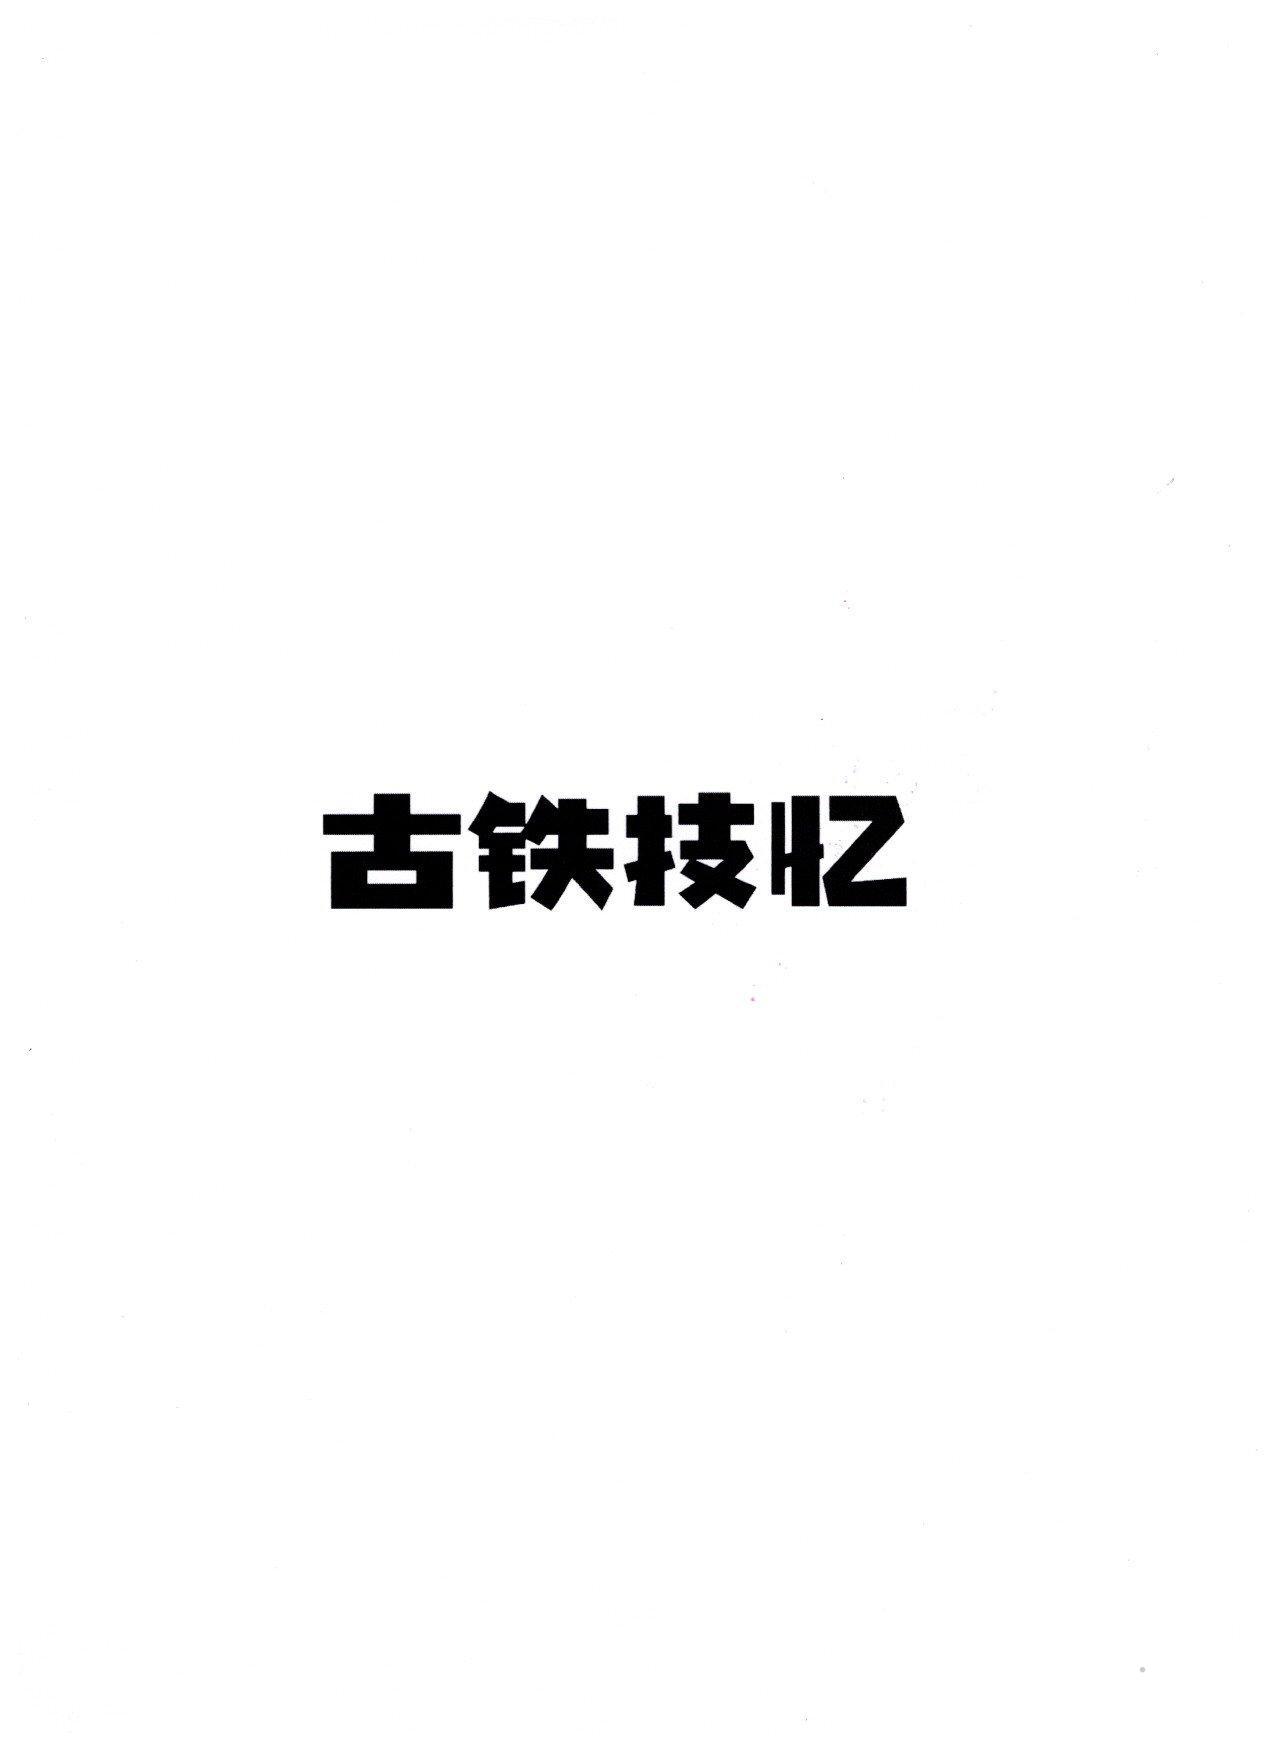 古铁技忆logo